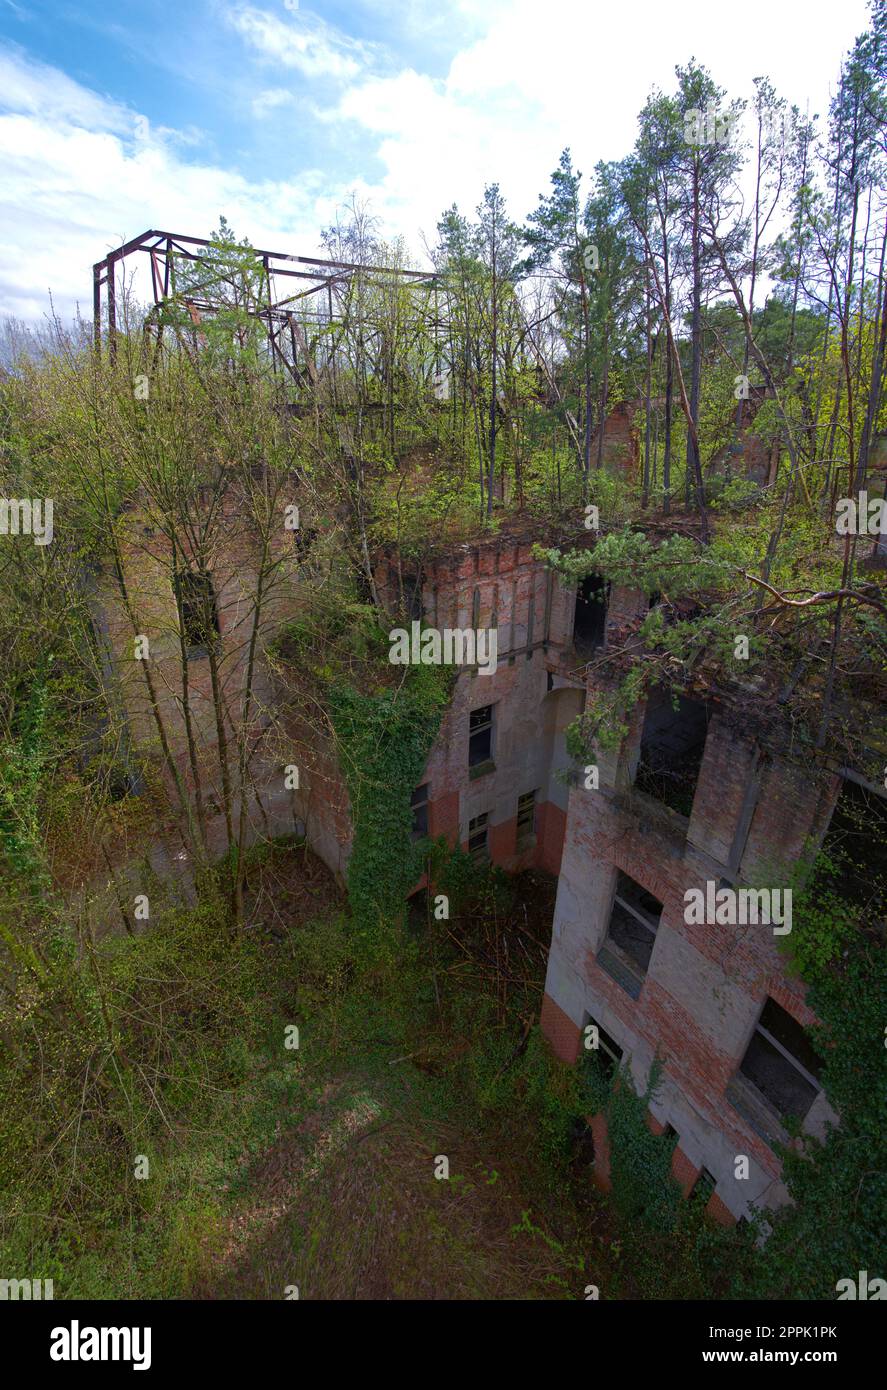 Abandonné bâtiment historique en Allemagne hôpital horreur scène créepy emplacement vue aérienne Banque D'Images